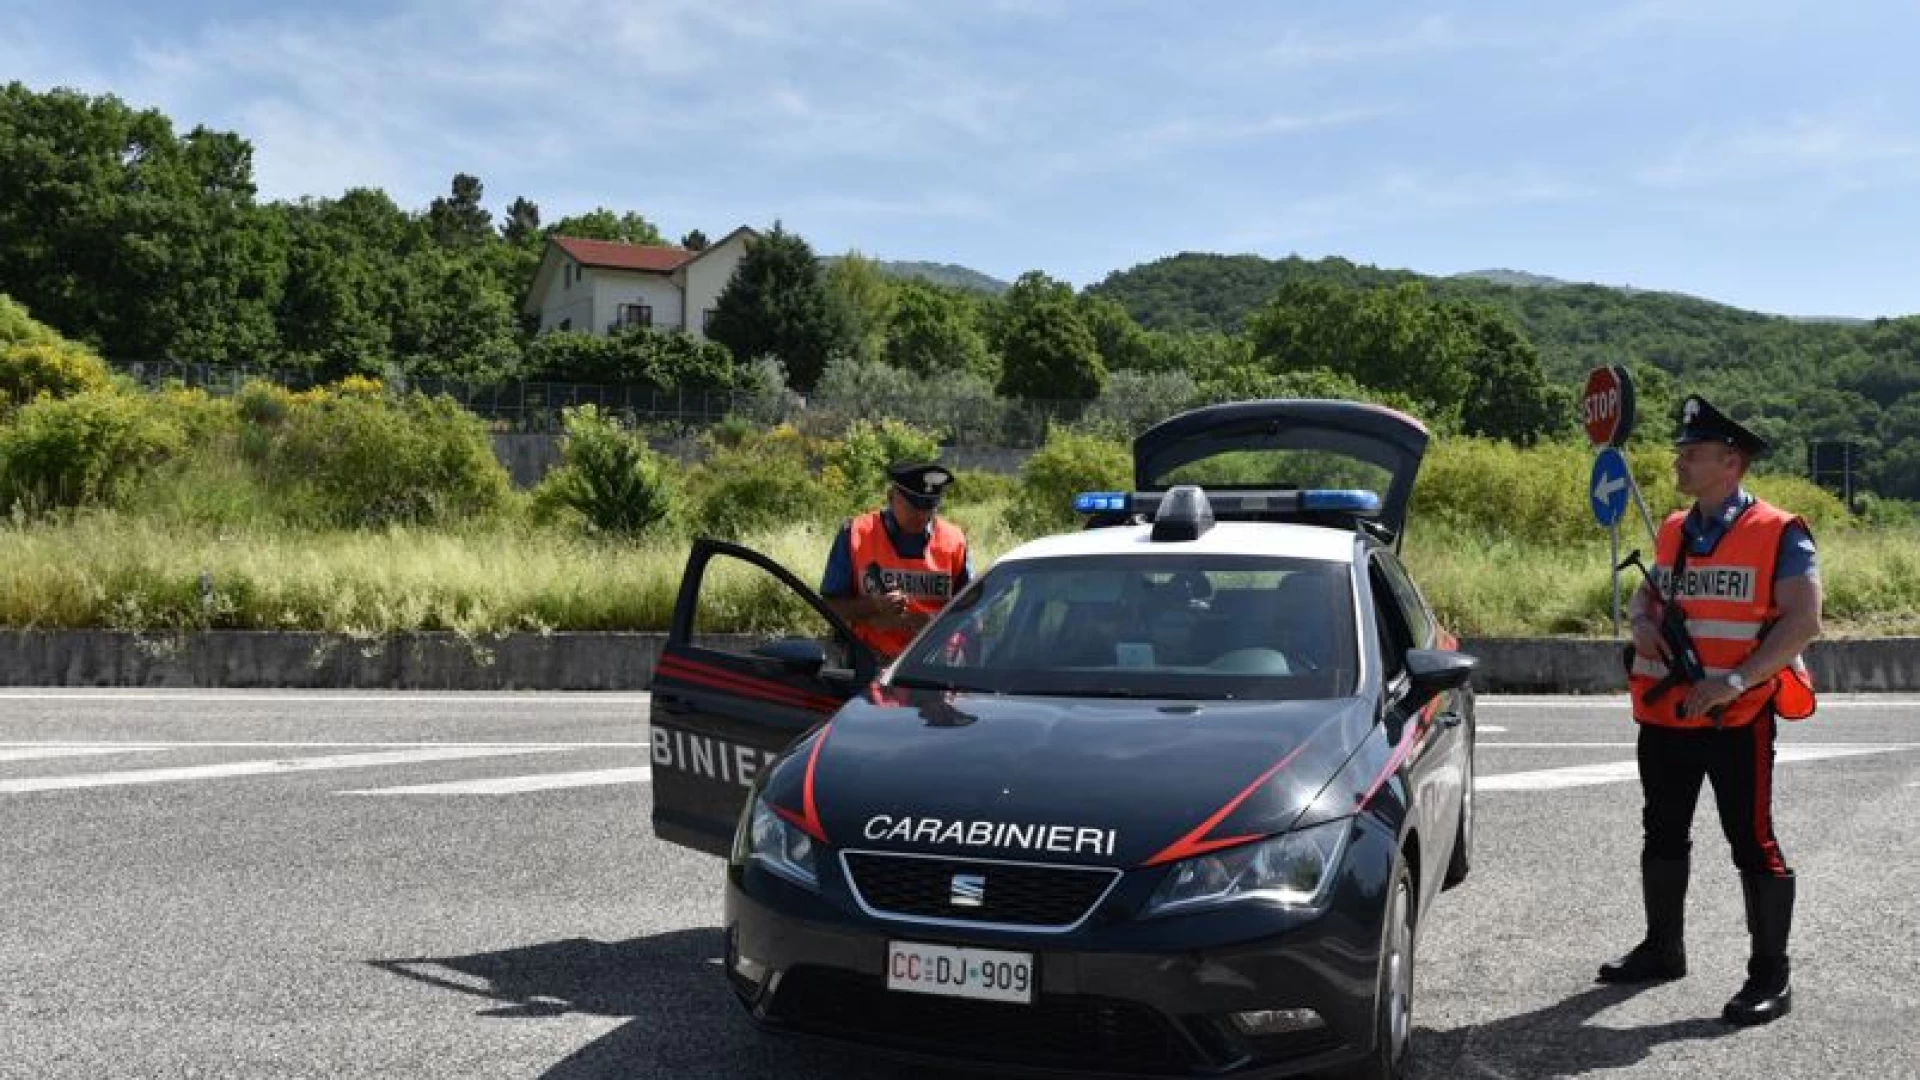 Trasacco: 37enne vìola il divieto di avvicinamento e minaccia i carabinieri con un coltello: arrestato